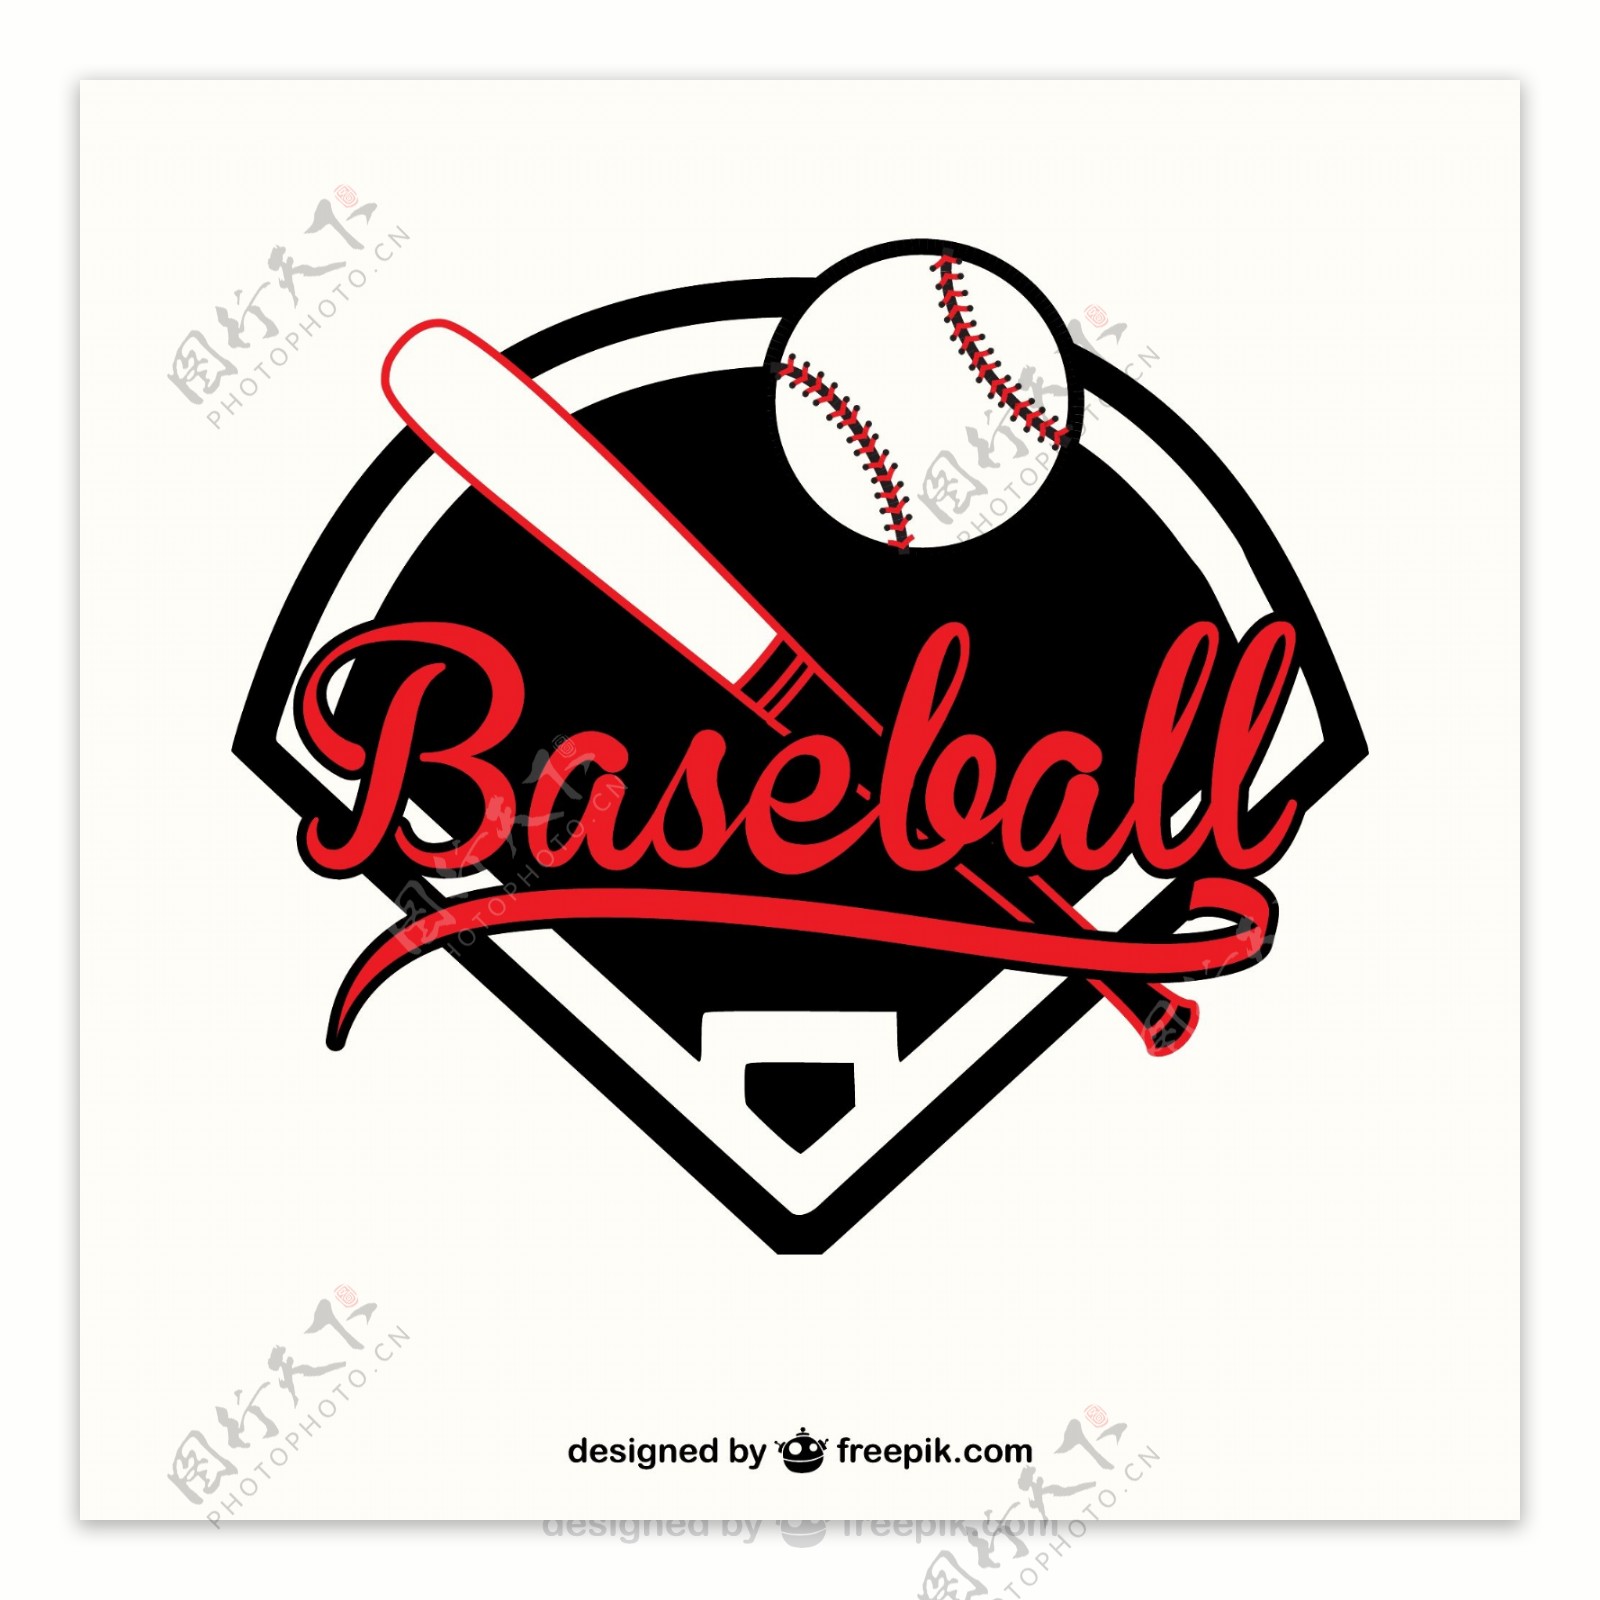 红色和黑色的棒球标志